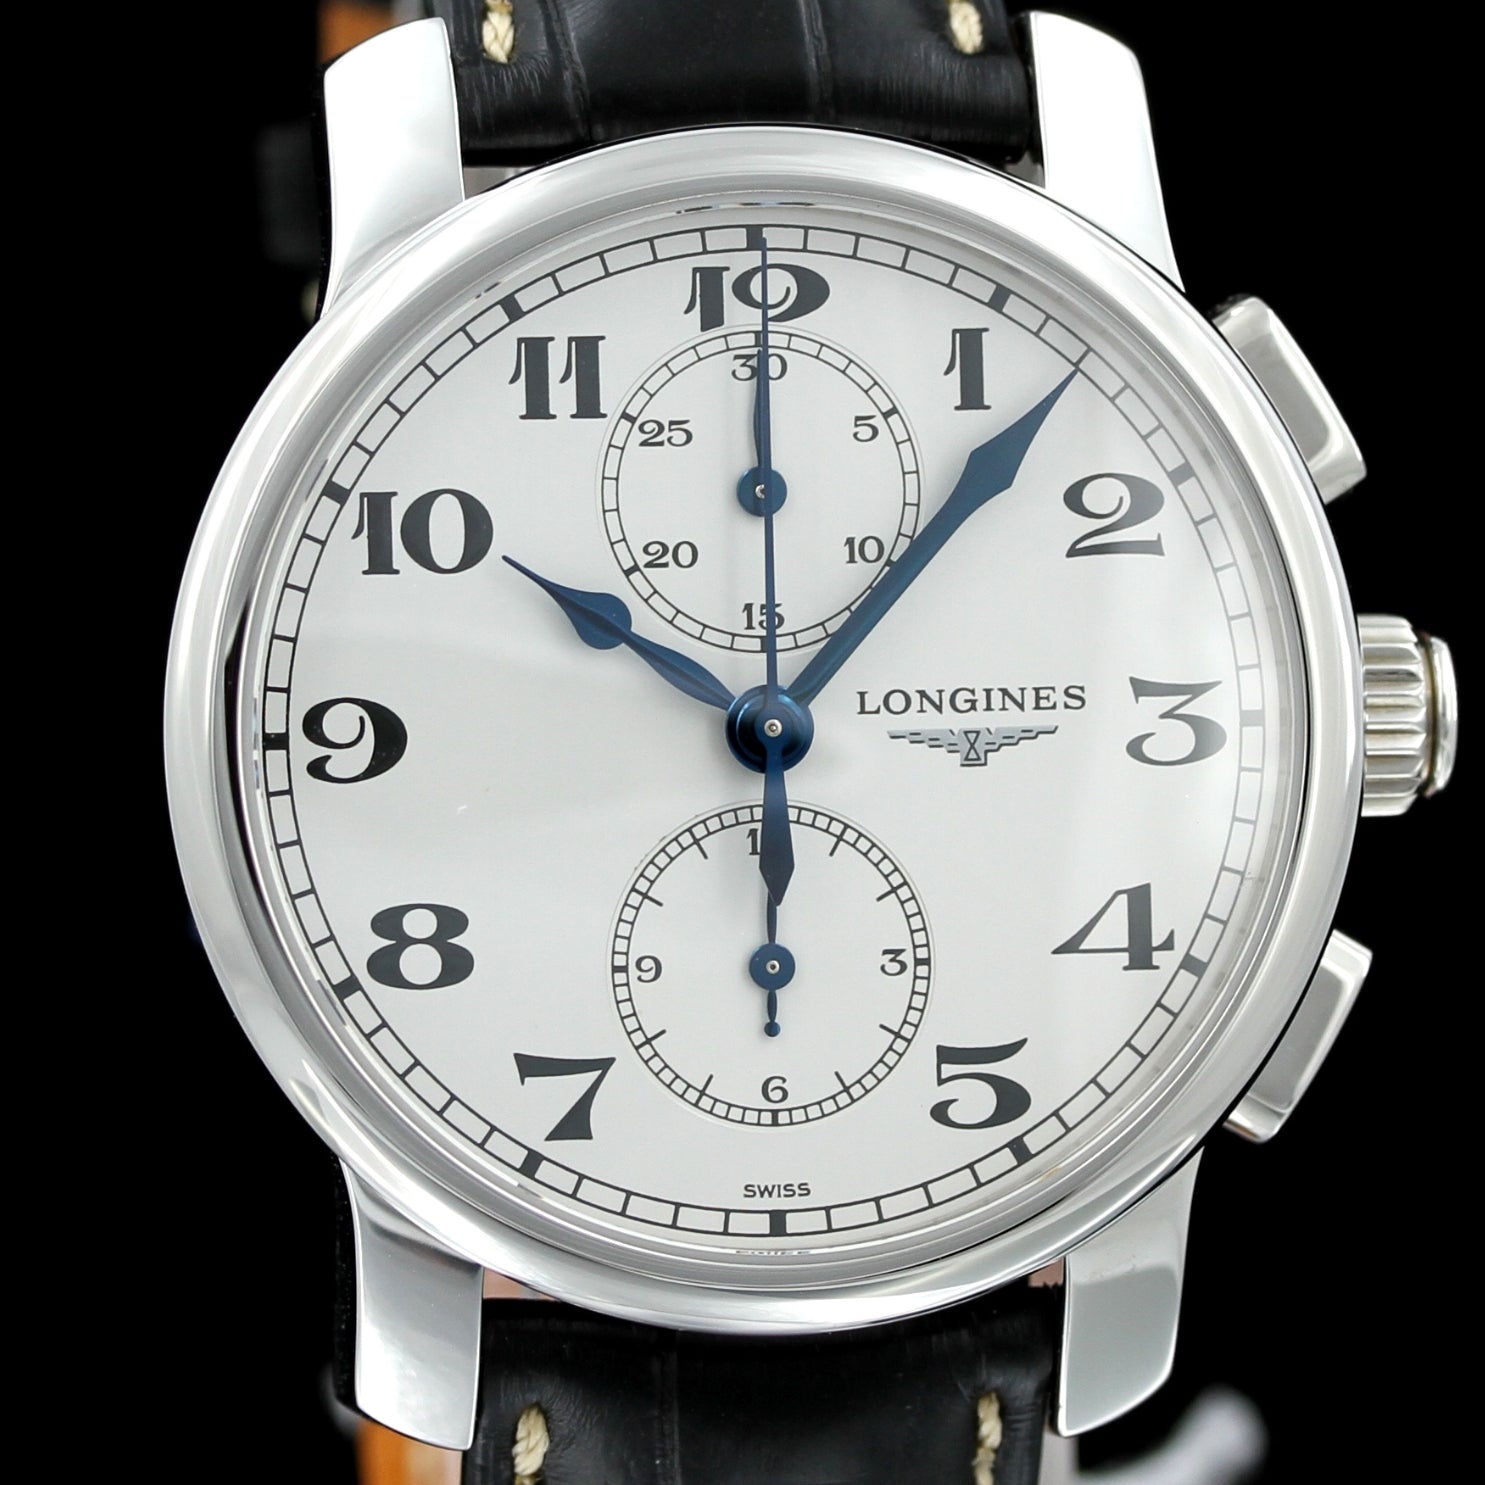 LONGINES Graf Zeppelin Chronograph und Pocket Watch Set 100 Jahre WEMPE, Ref. 26794732, Limited 1XX of 200, 2009, B+P